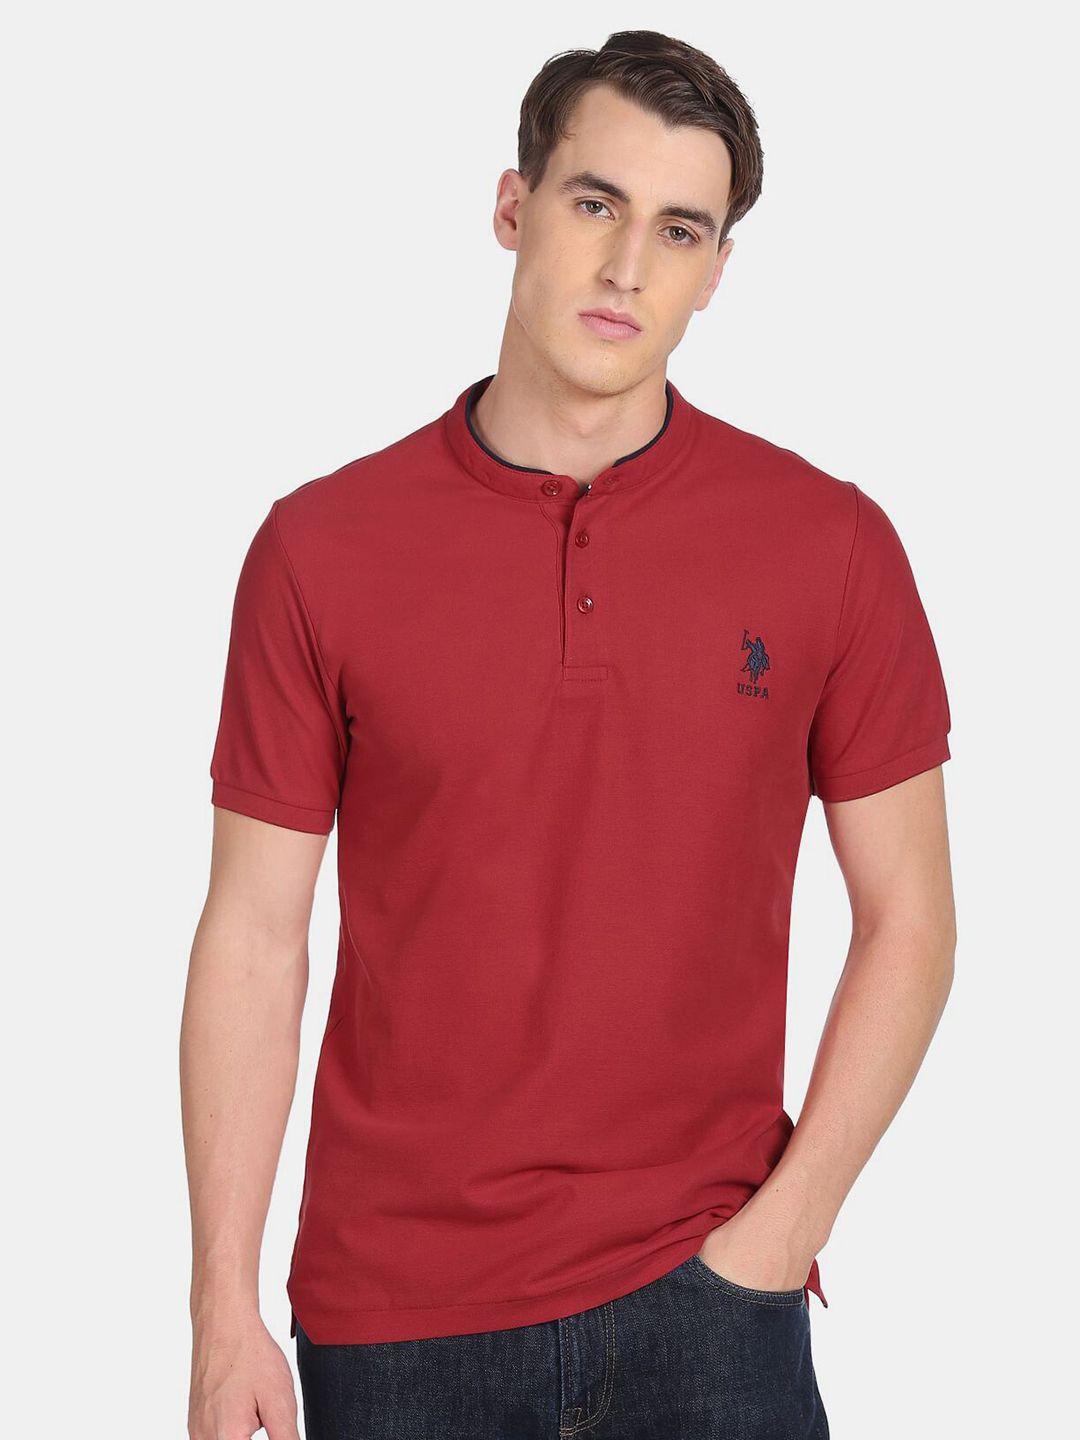 u-s-polo-assn-men-red-mandarin-collar-cotton-t-shirt